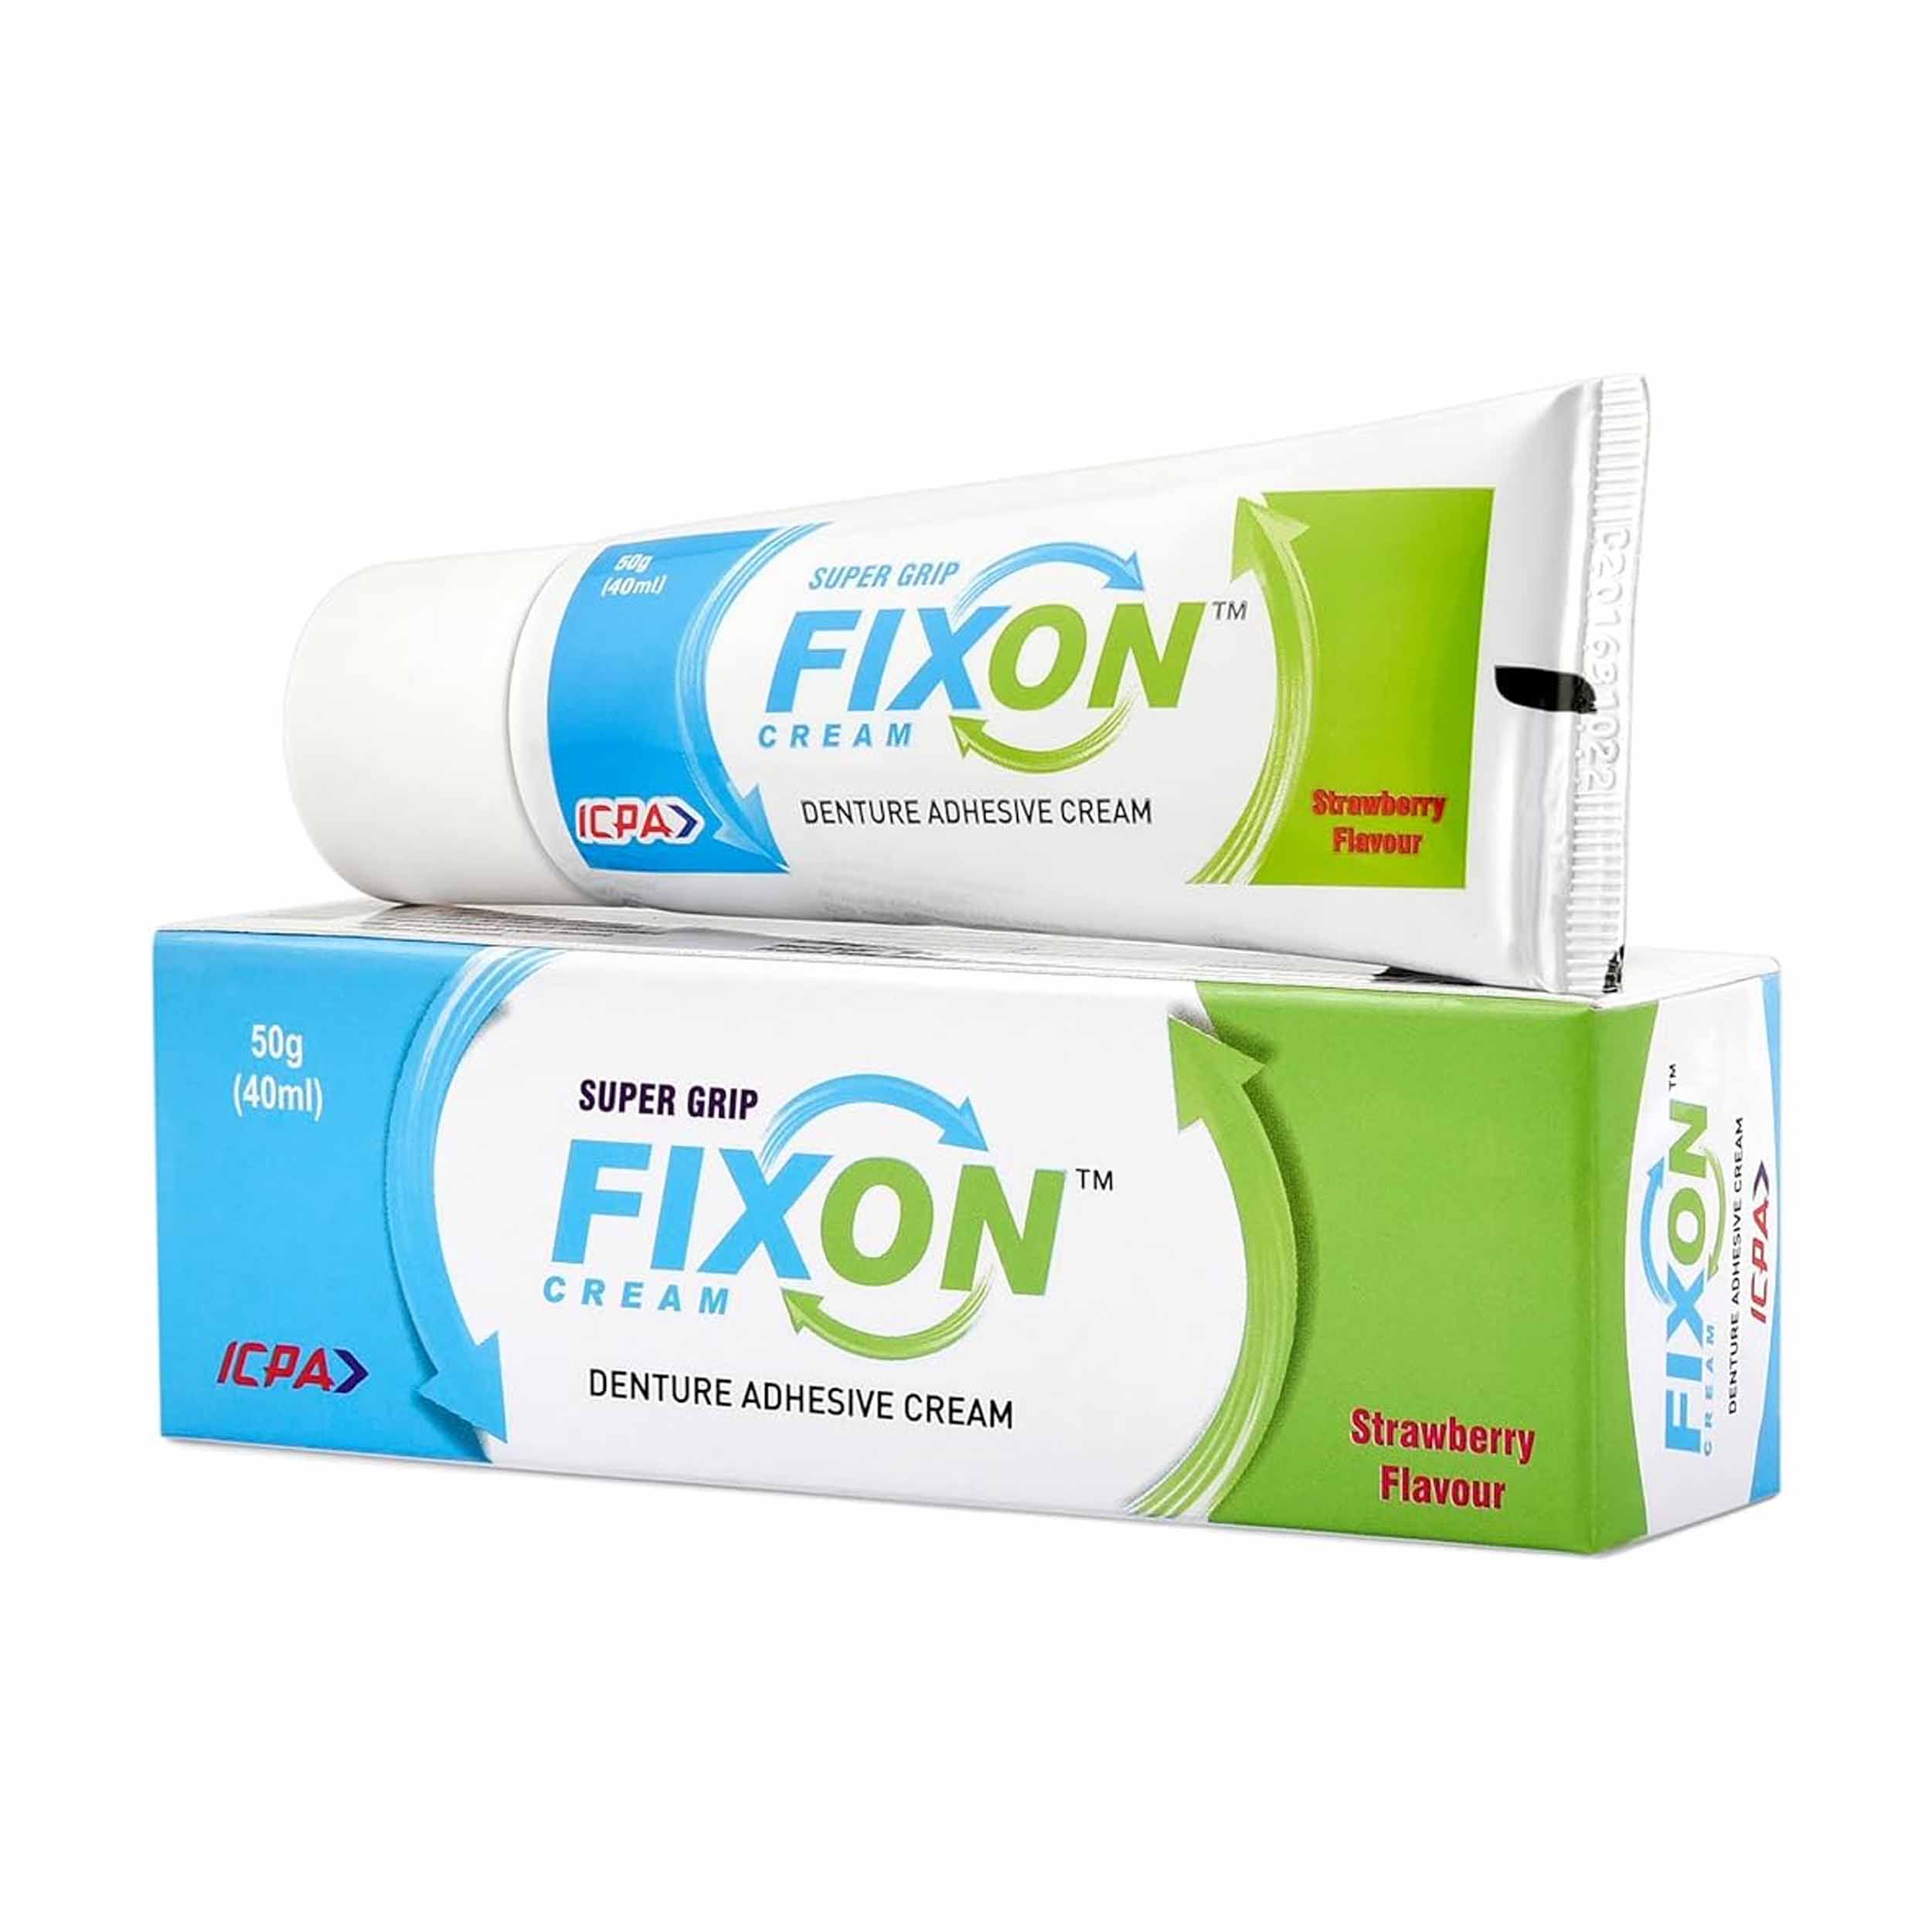 ICPA Super Grip Fixon Cream 15g